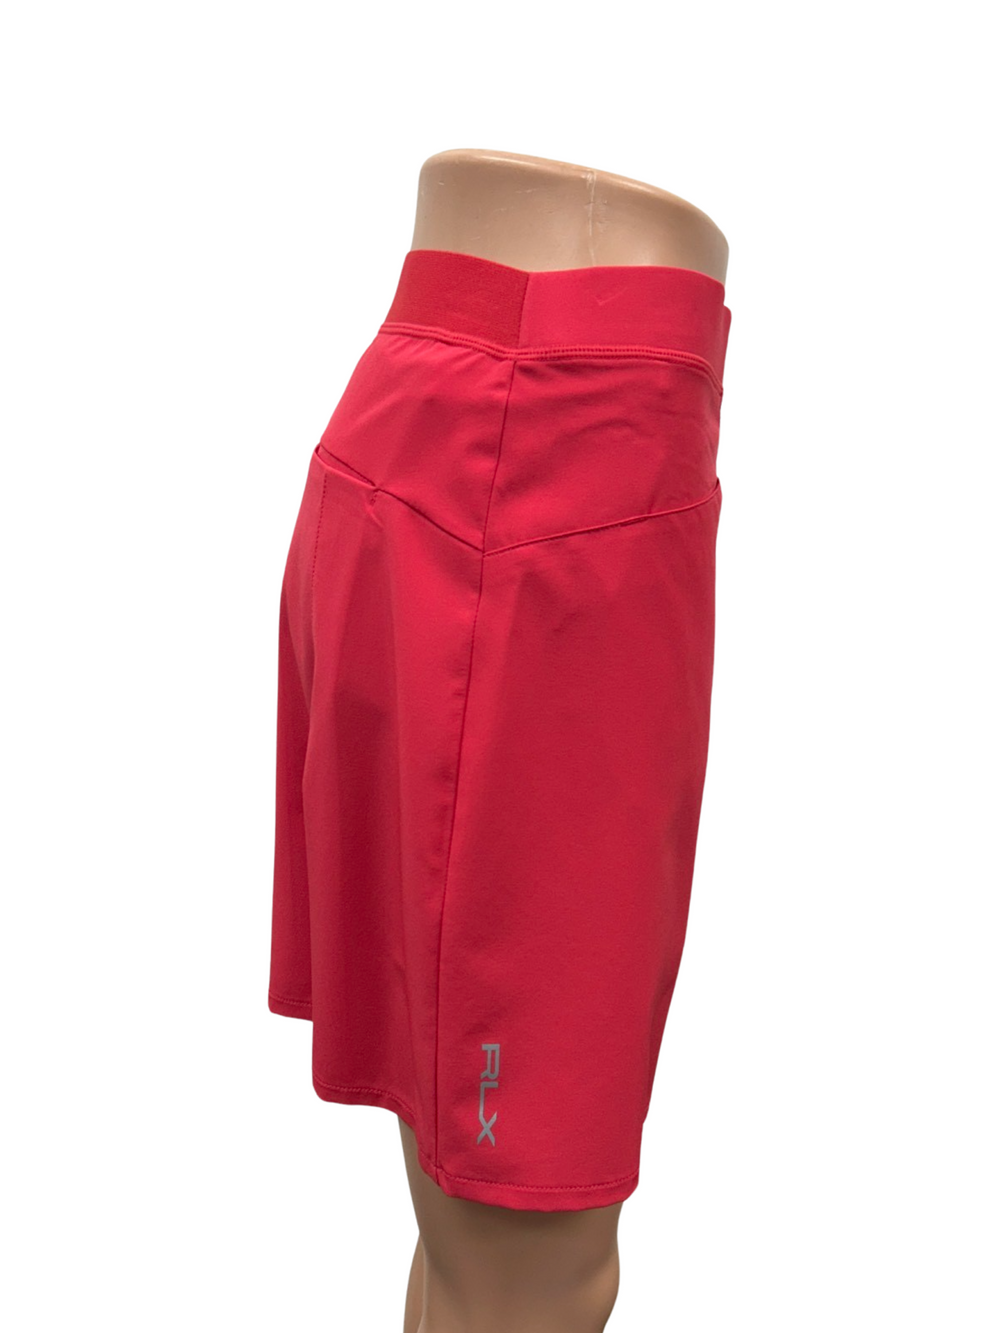 RLX By Ralph Lauren Pleated Skort - Maul Red - Size Medium - Skorzie